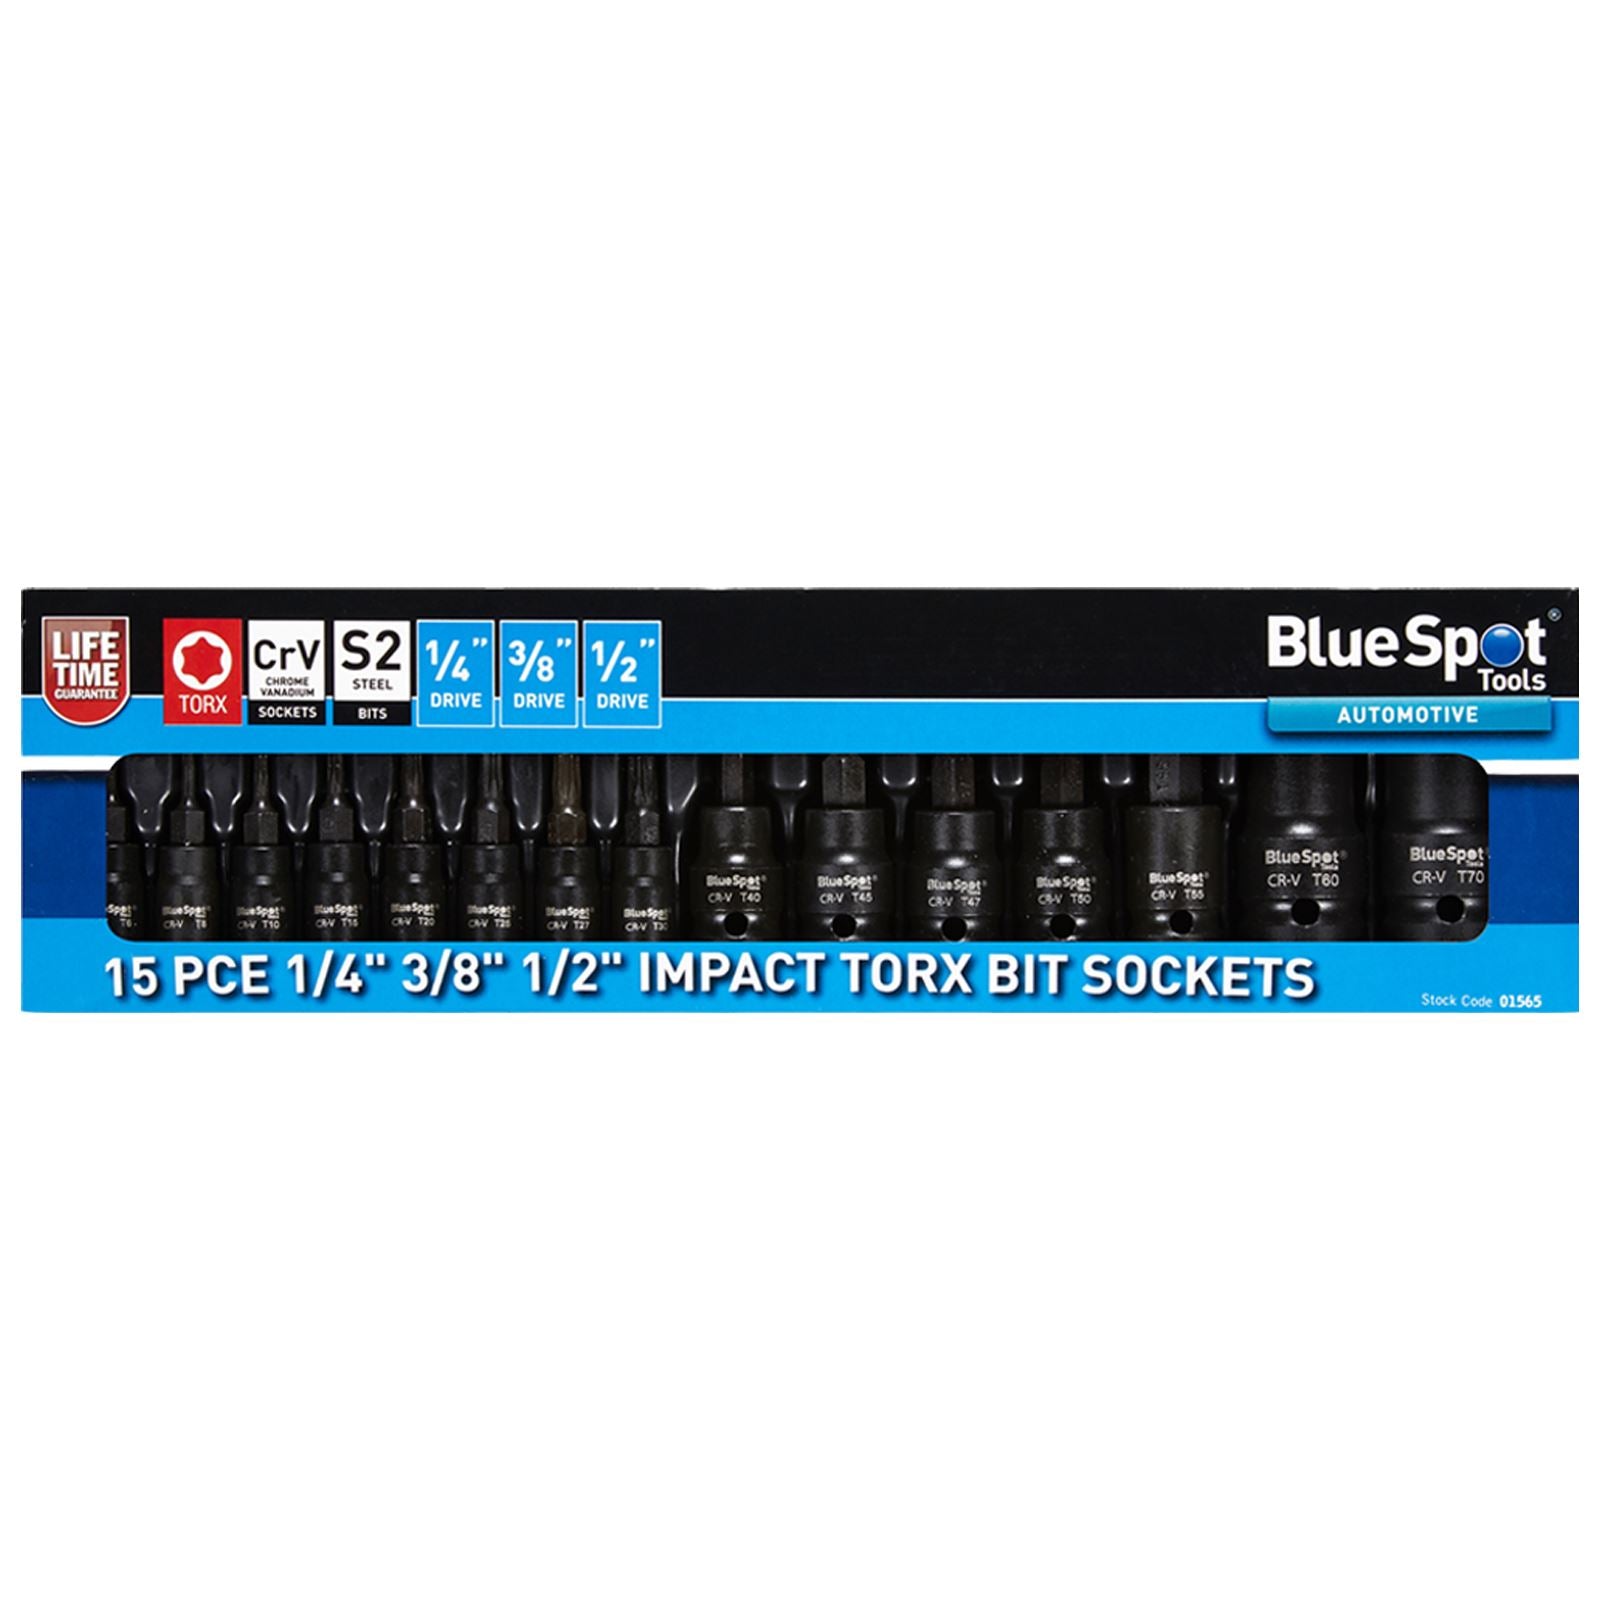 BlueSpot Impact Torx Bit Sockets 15 Piece 1/4" 3/8" 1/2" Drive